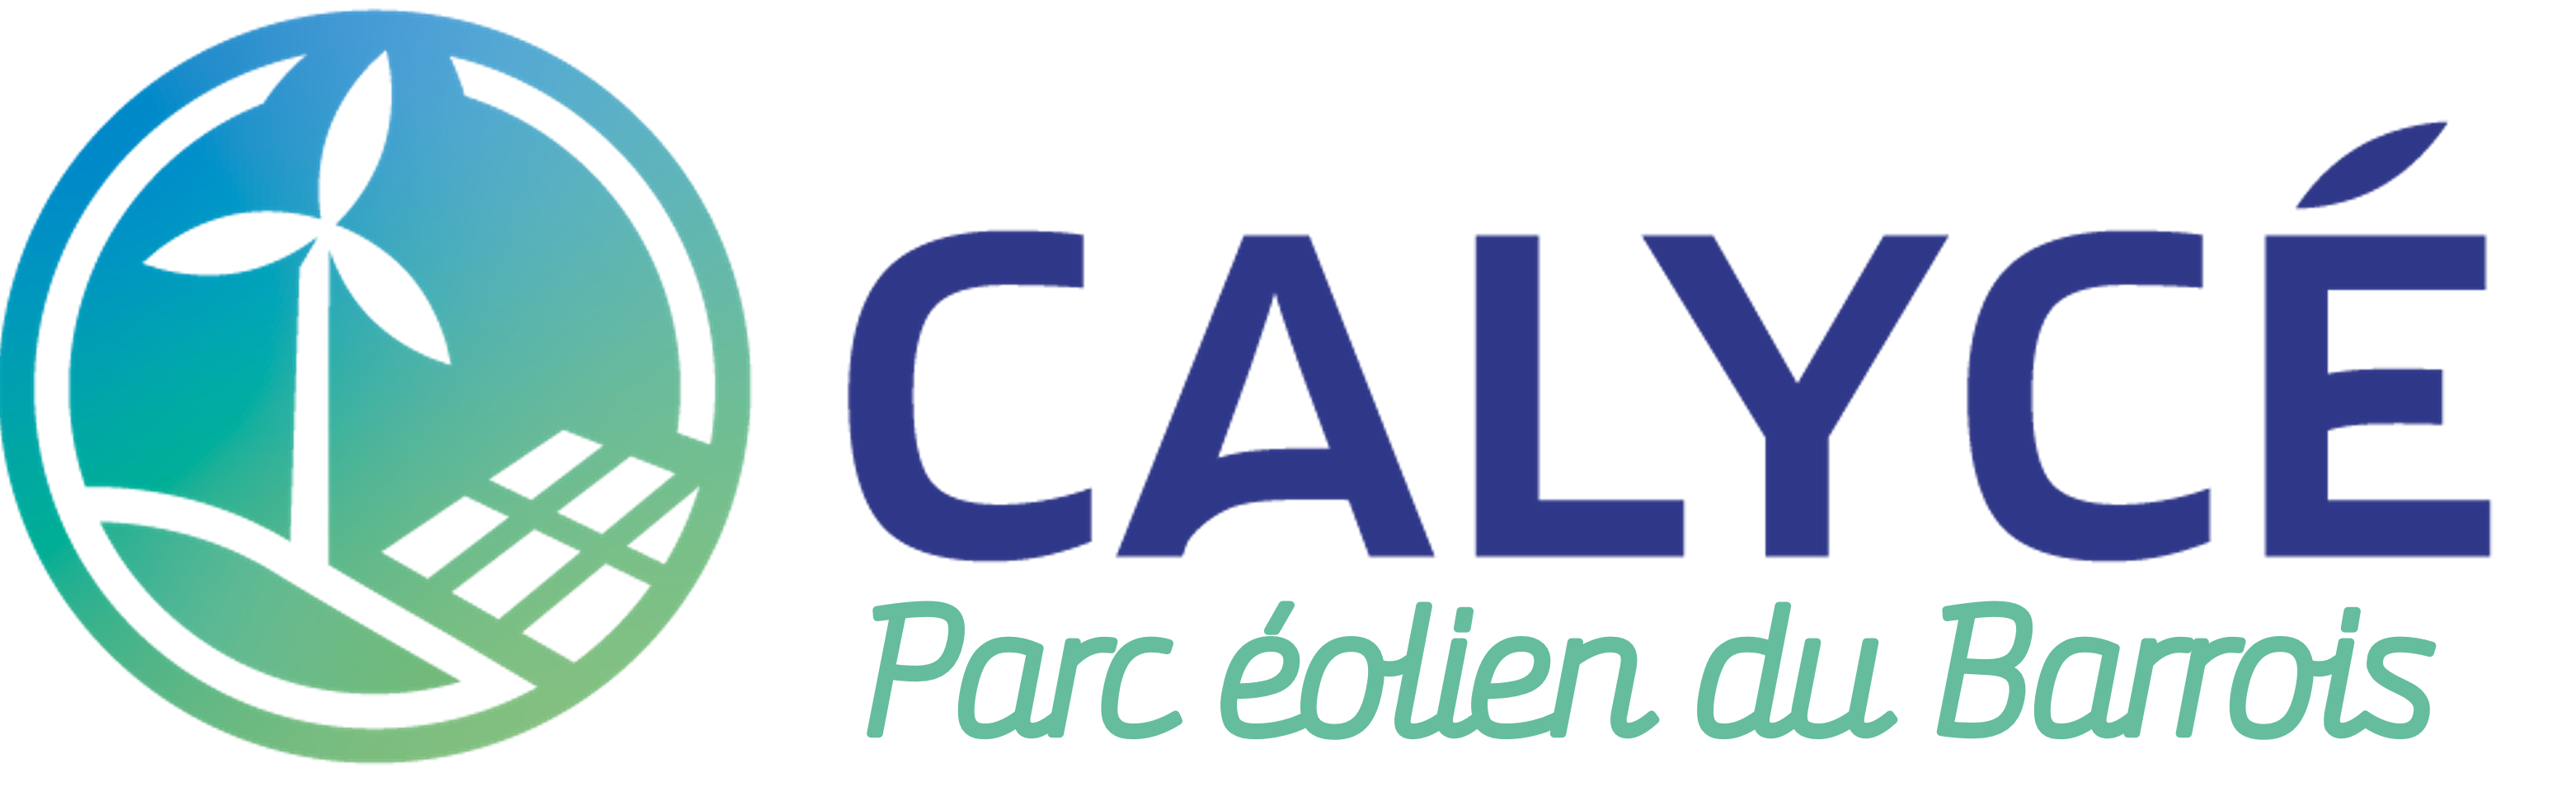 PARC ÉOLIEN DU BARROIS Logo